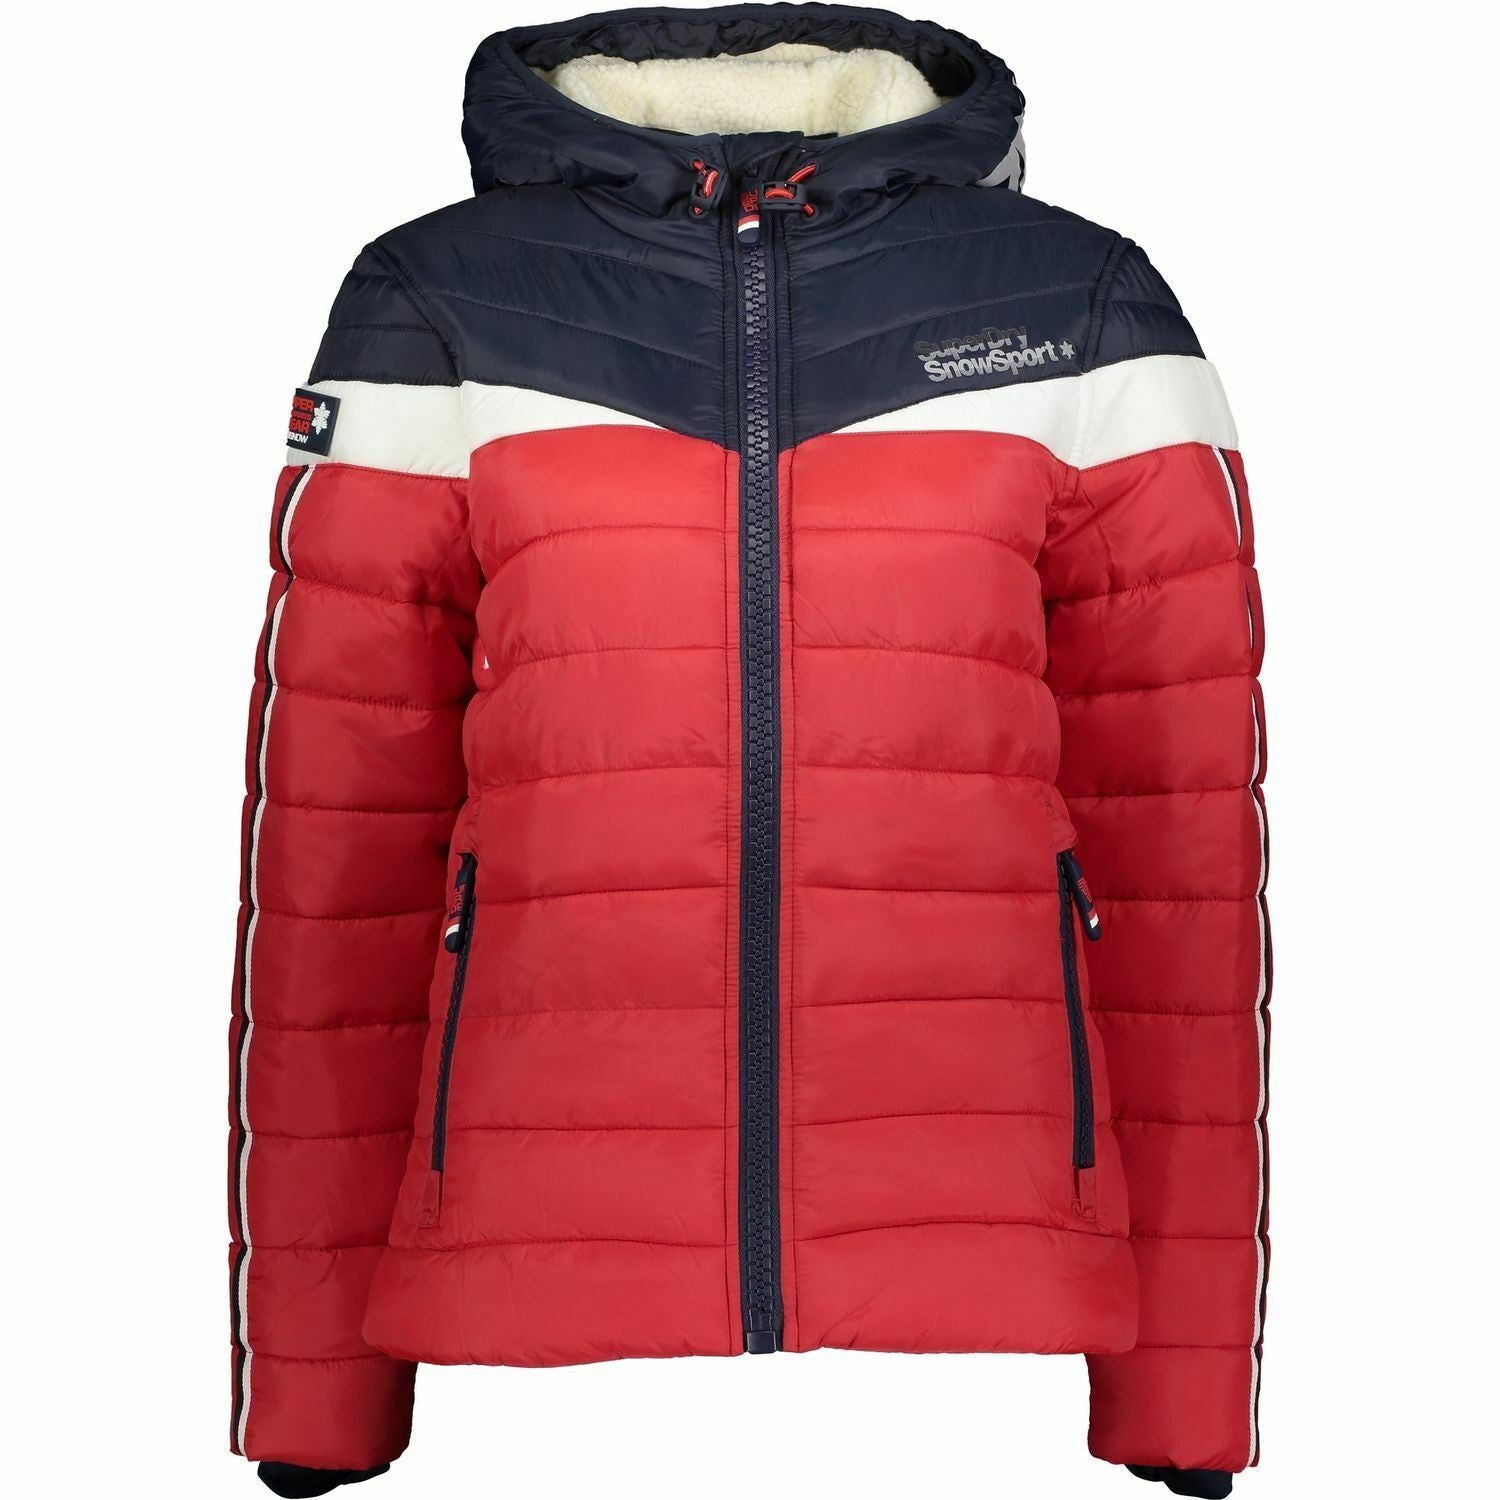 Womens Superdry Fuji Downhill ProSnow Jacket UK 8/Size XS or UK 12/Size M